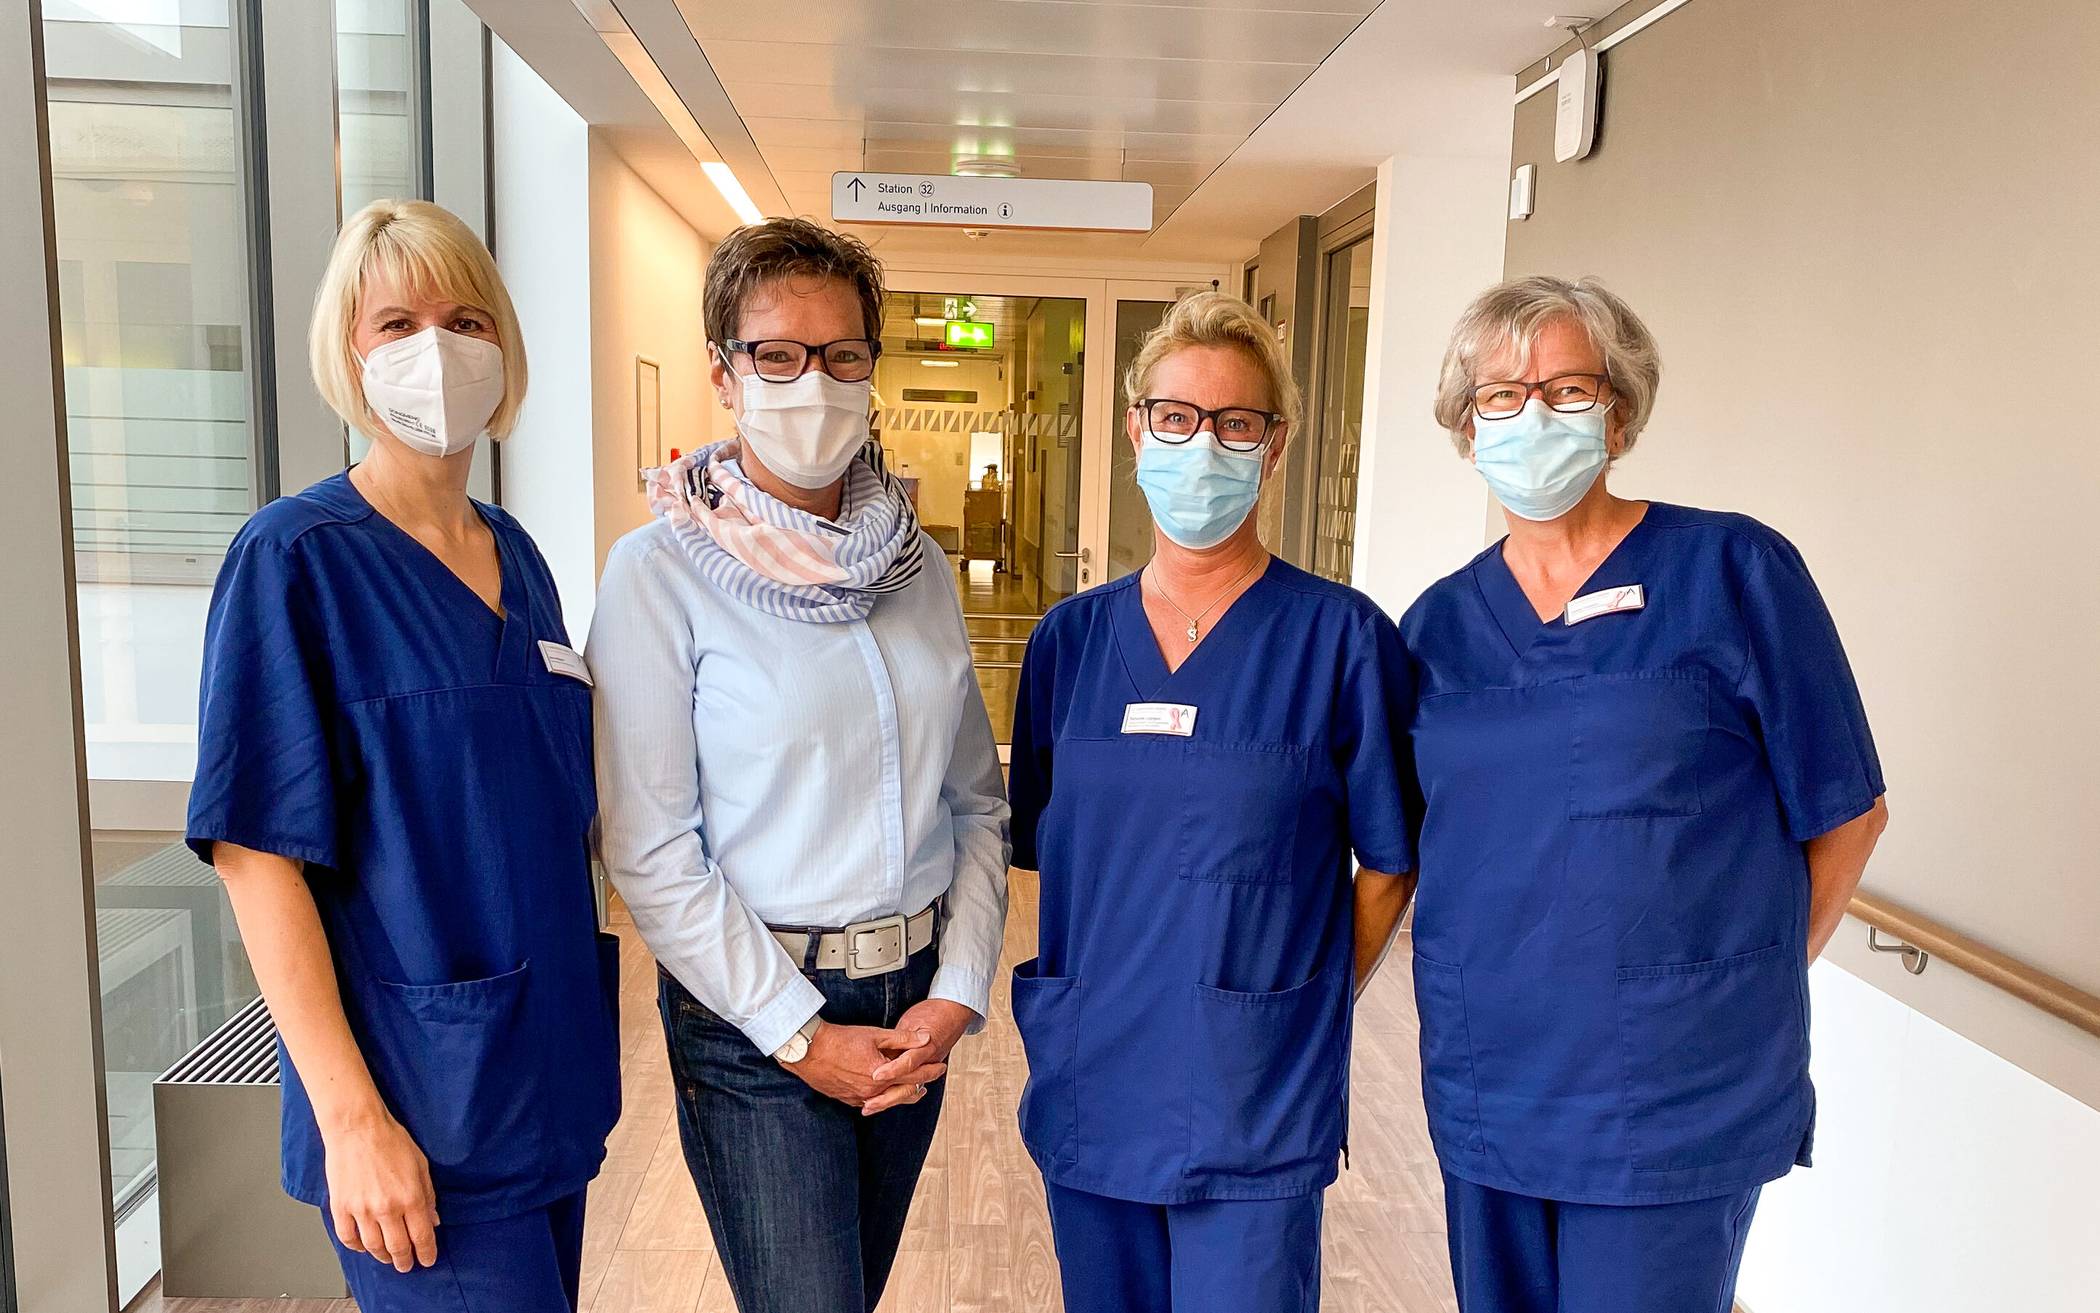   Brustkrebspatientin Monika Hodißen (2.v.l.) mit Mitarbeiterinnen des zertifizierten Brustzentrums im „Etienne“.  